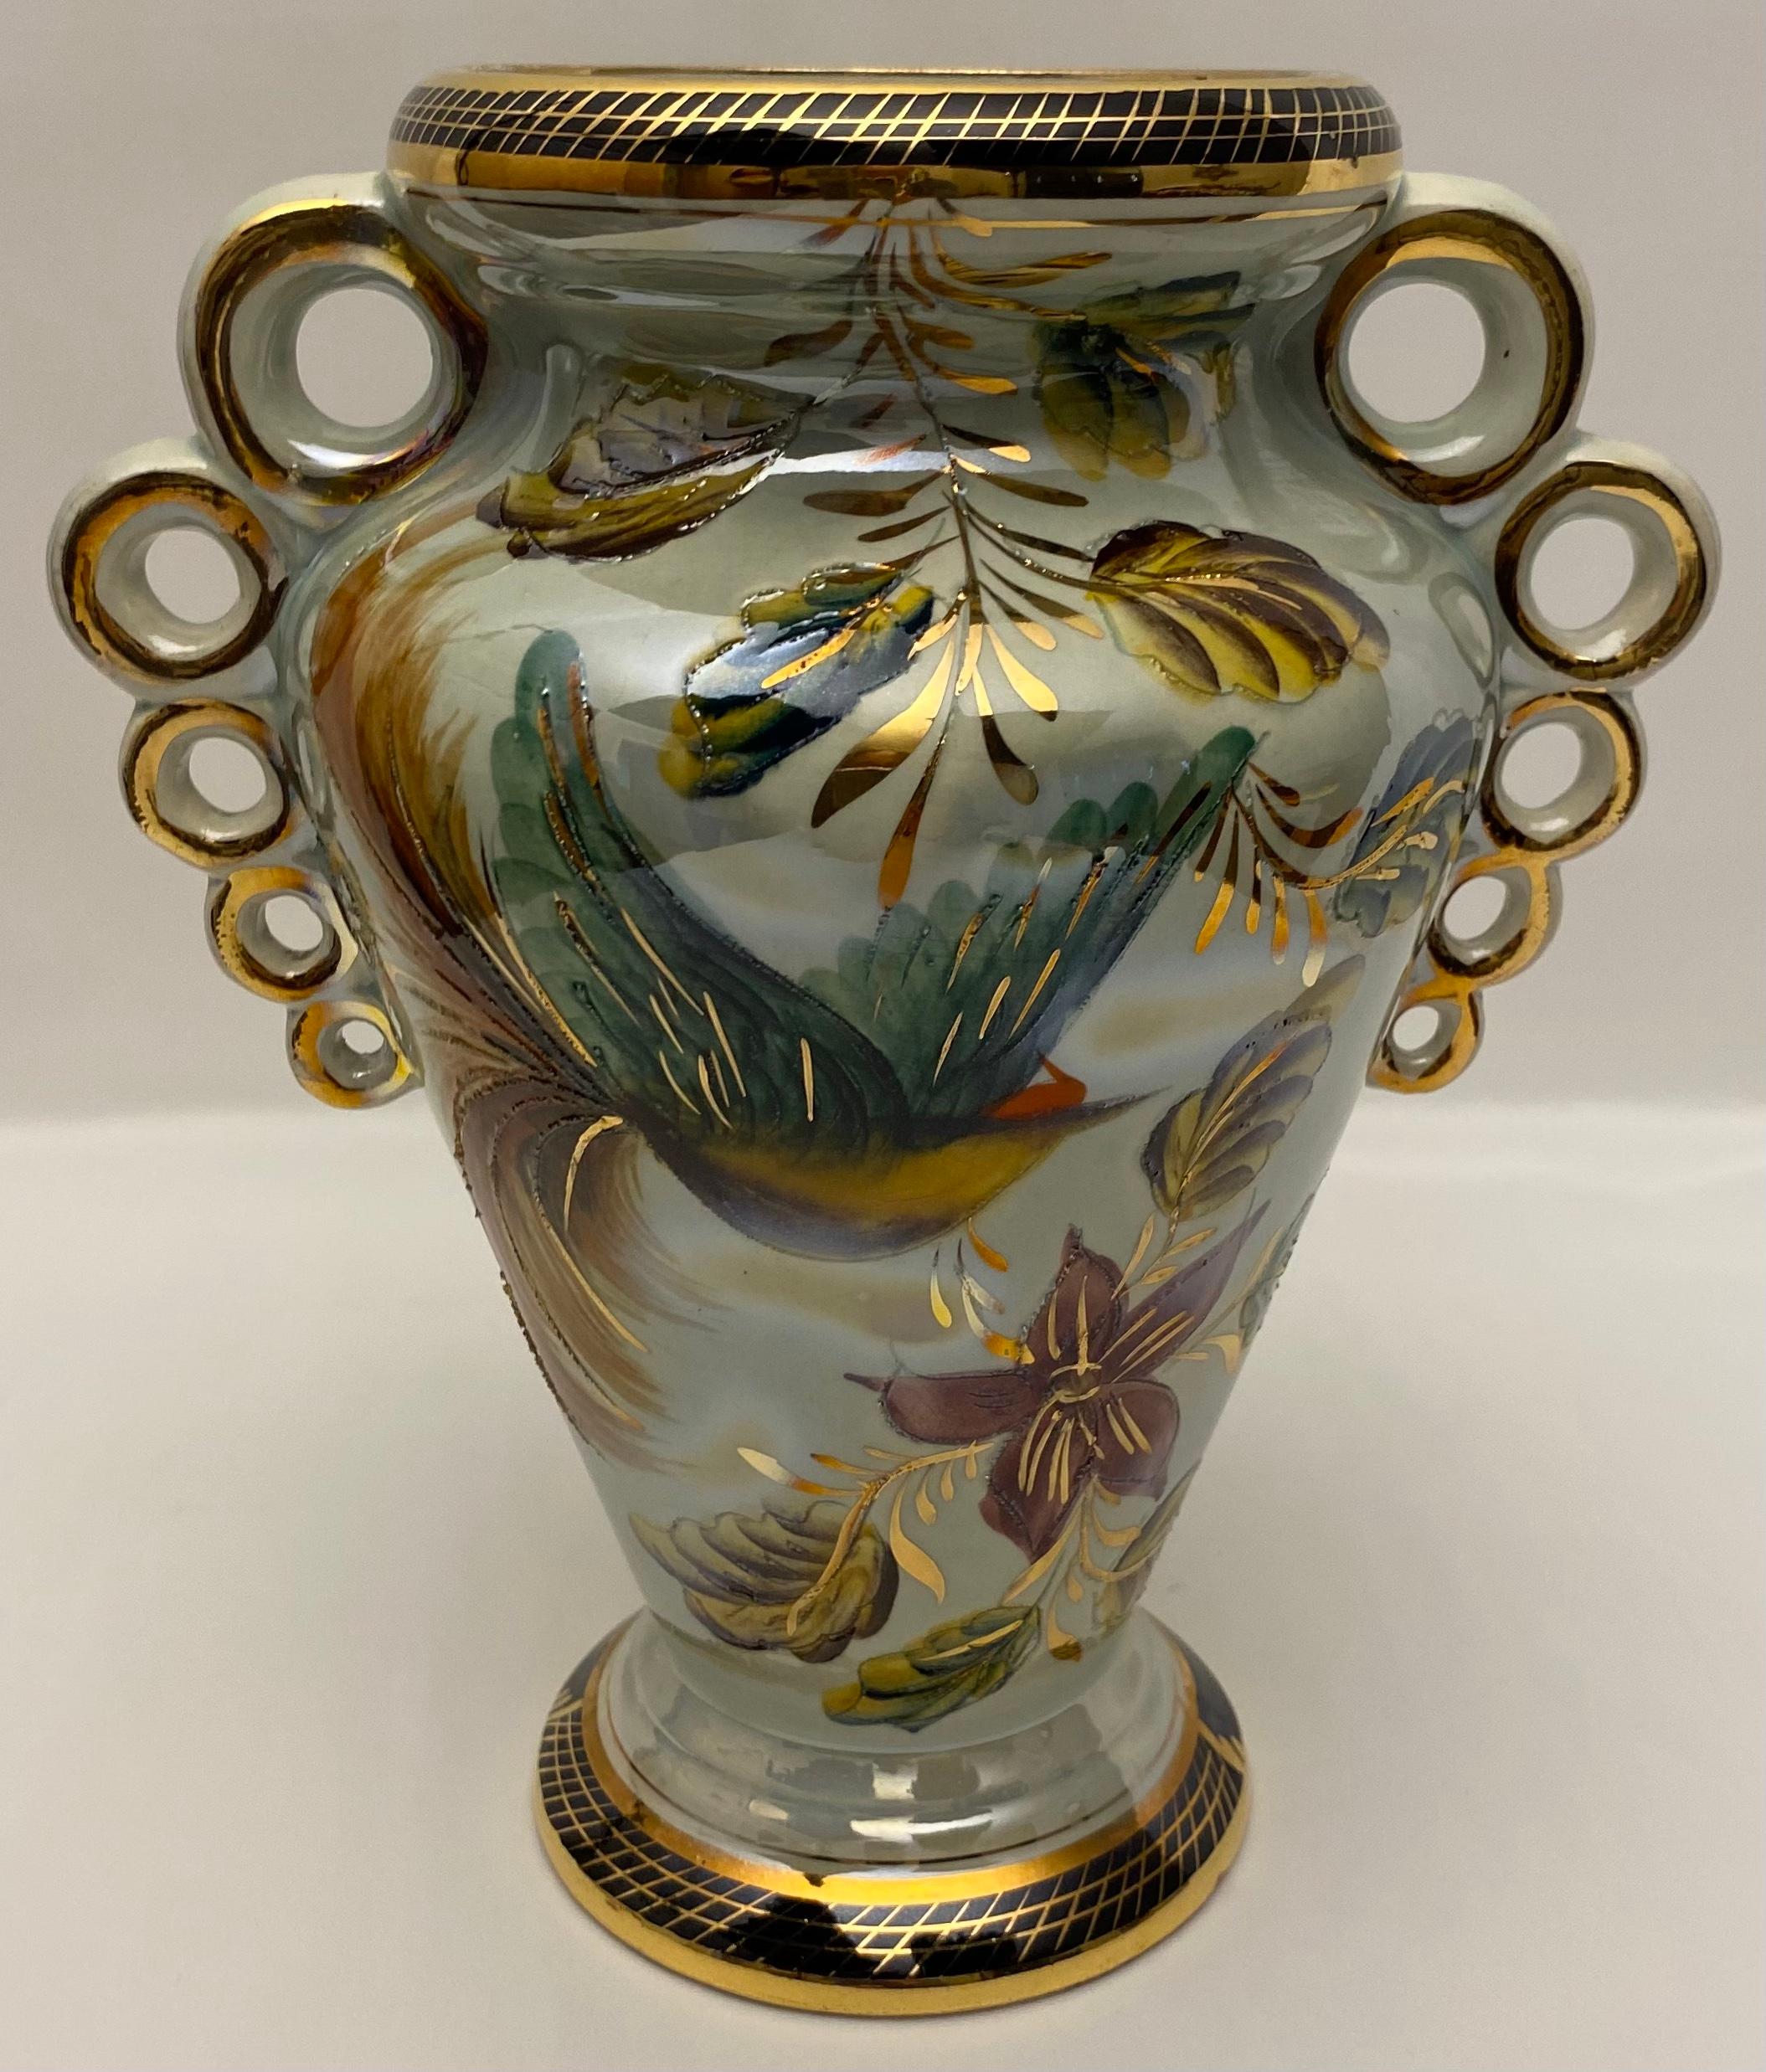 Vase à motif floral en porcelaine de couleur céladon, par H. Bequet Quaregnon, Belgique, vers 1940. Ce vase décoratif s'intègre parfaitement dans un grand nombre de styles d'intérieur. 

Ce vase céladon et or est fortement décoré d'un motif